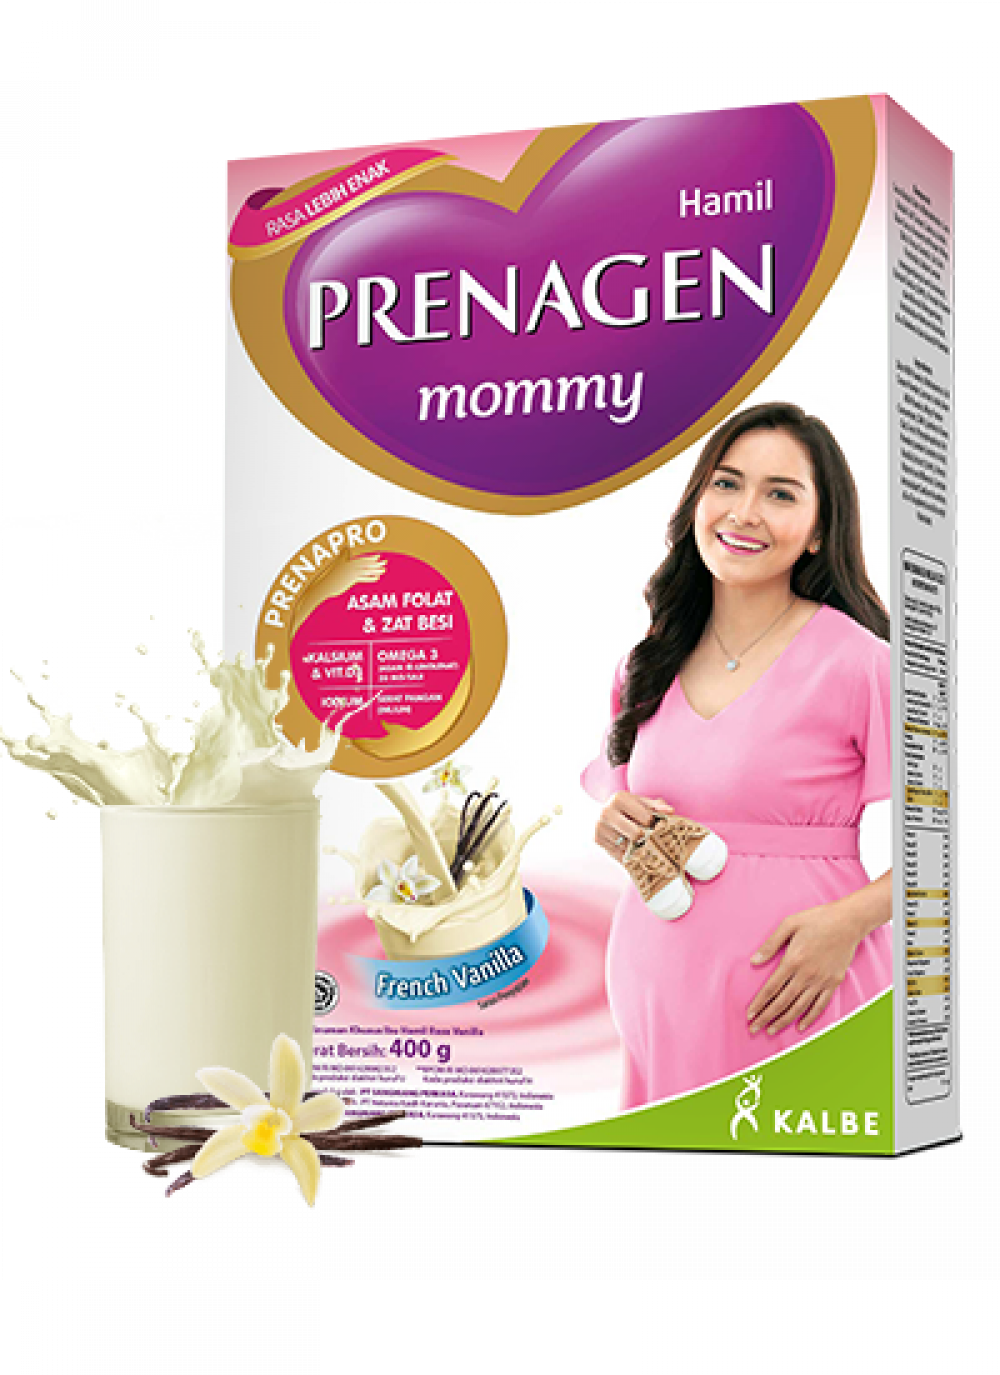 PRENAGEN mommy French Vanilla